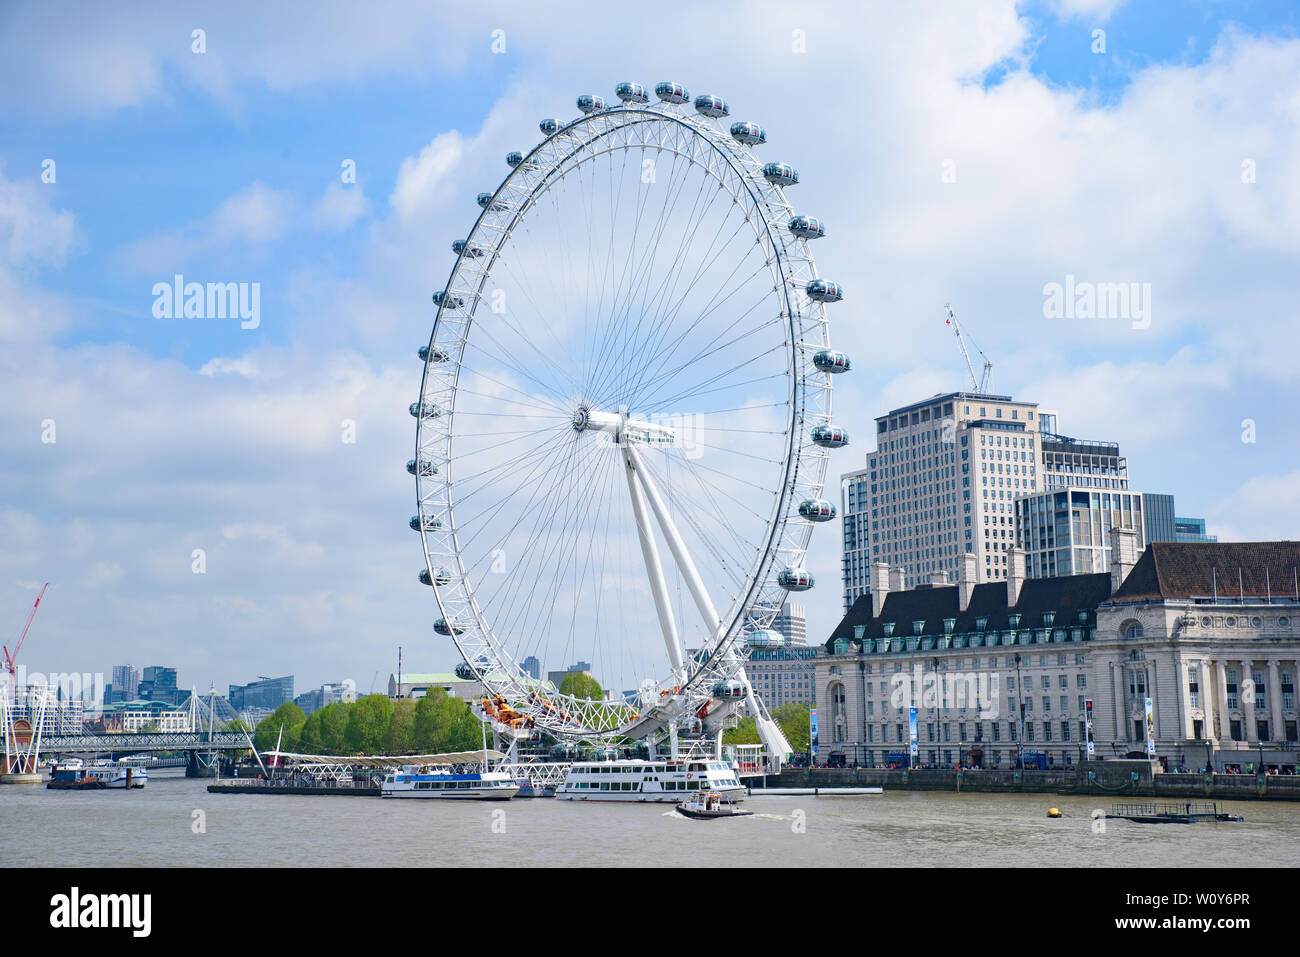 El London Eye, la famosa noria de observación en la orilla sur del río Támesis en Londres, Reino Unido Foto de stock